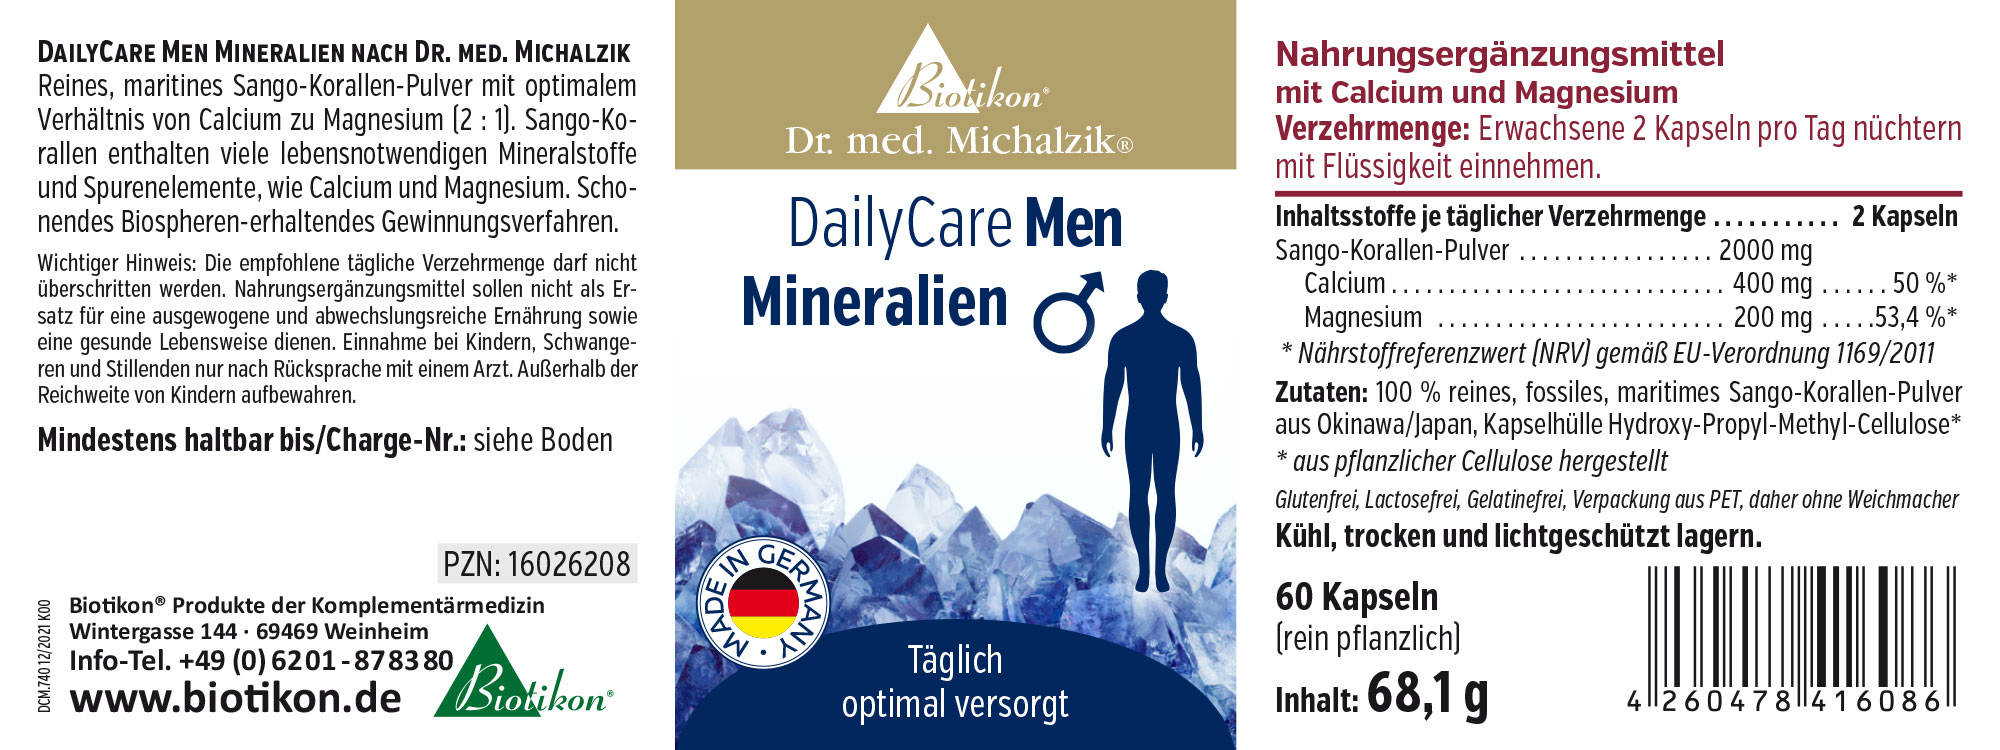 DailyCare Men aux minéraux